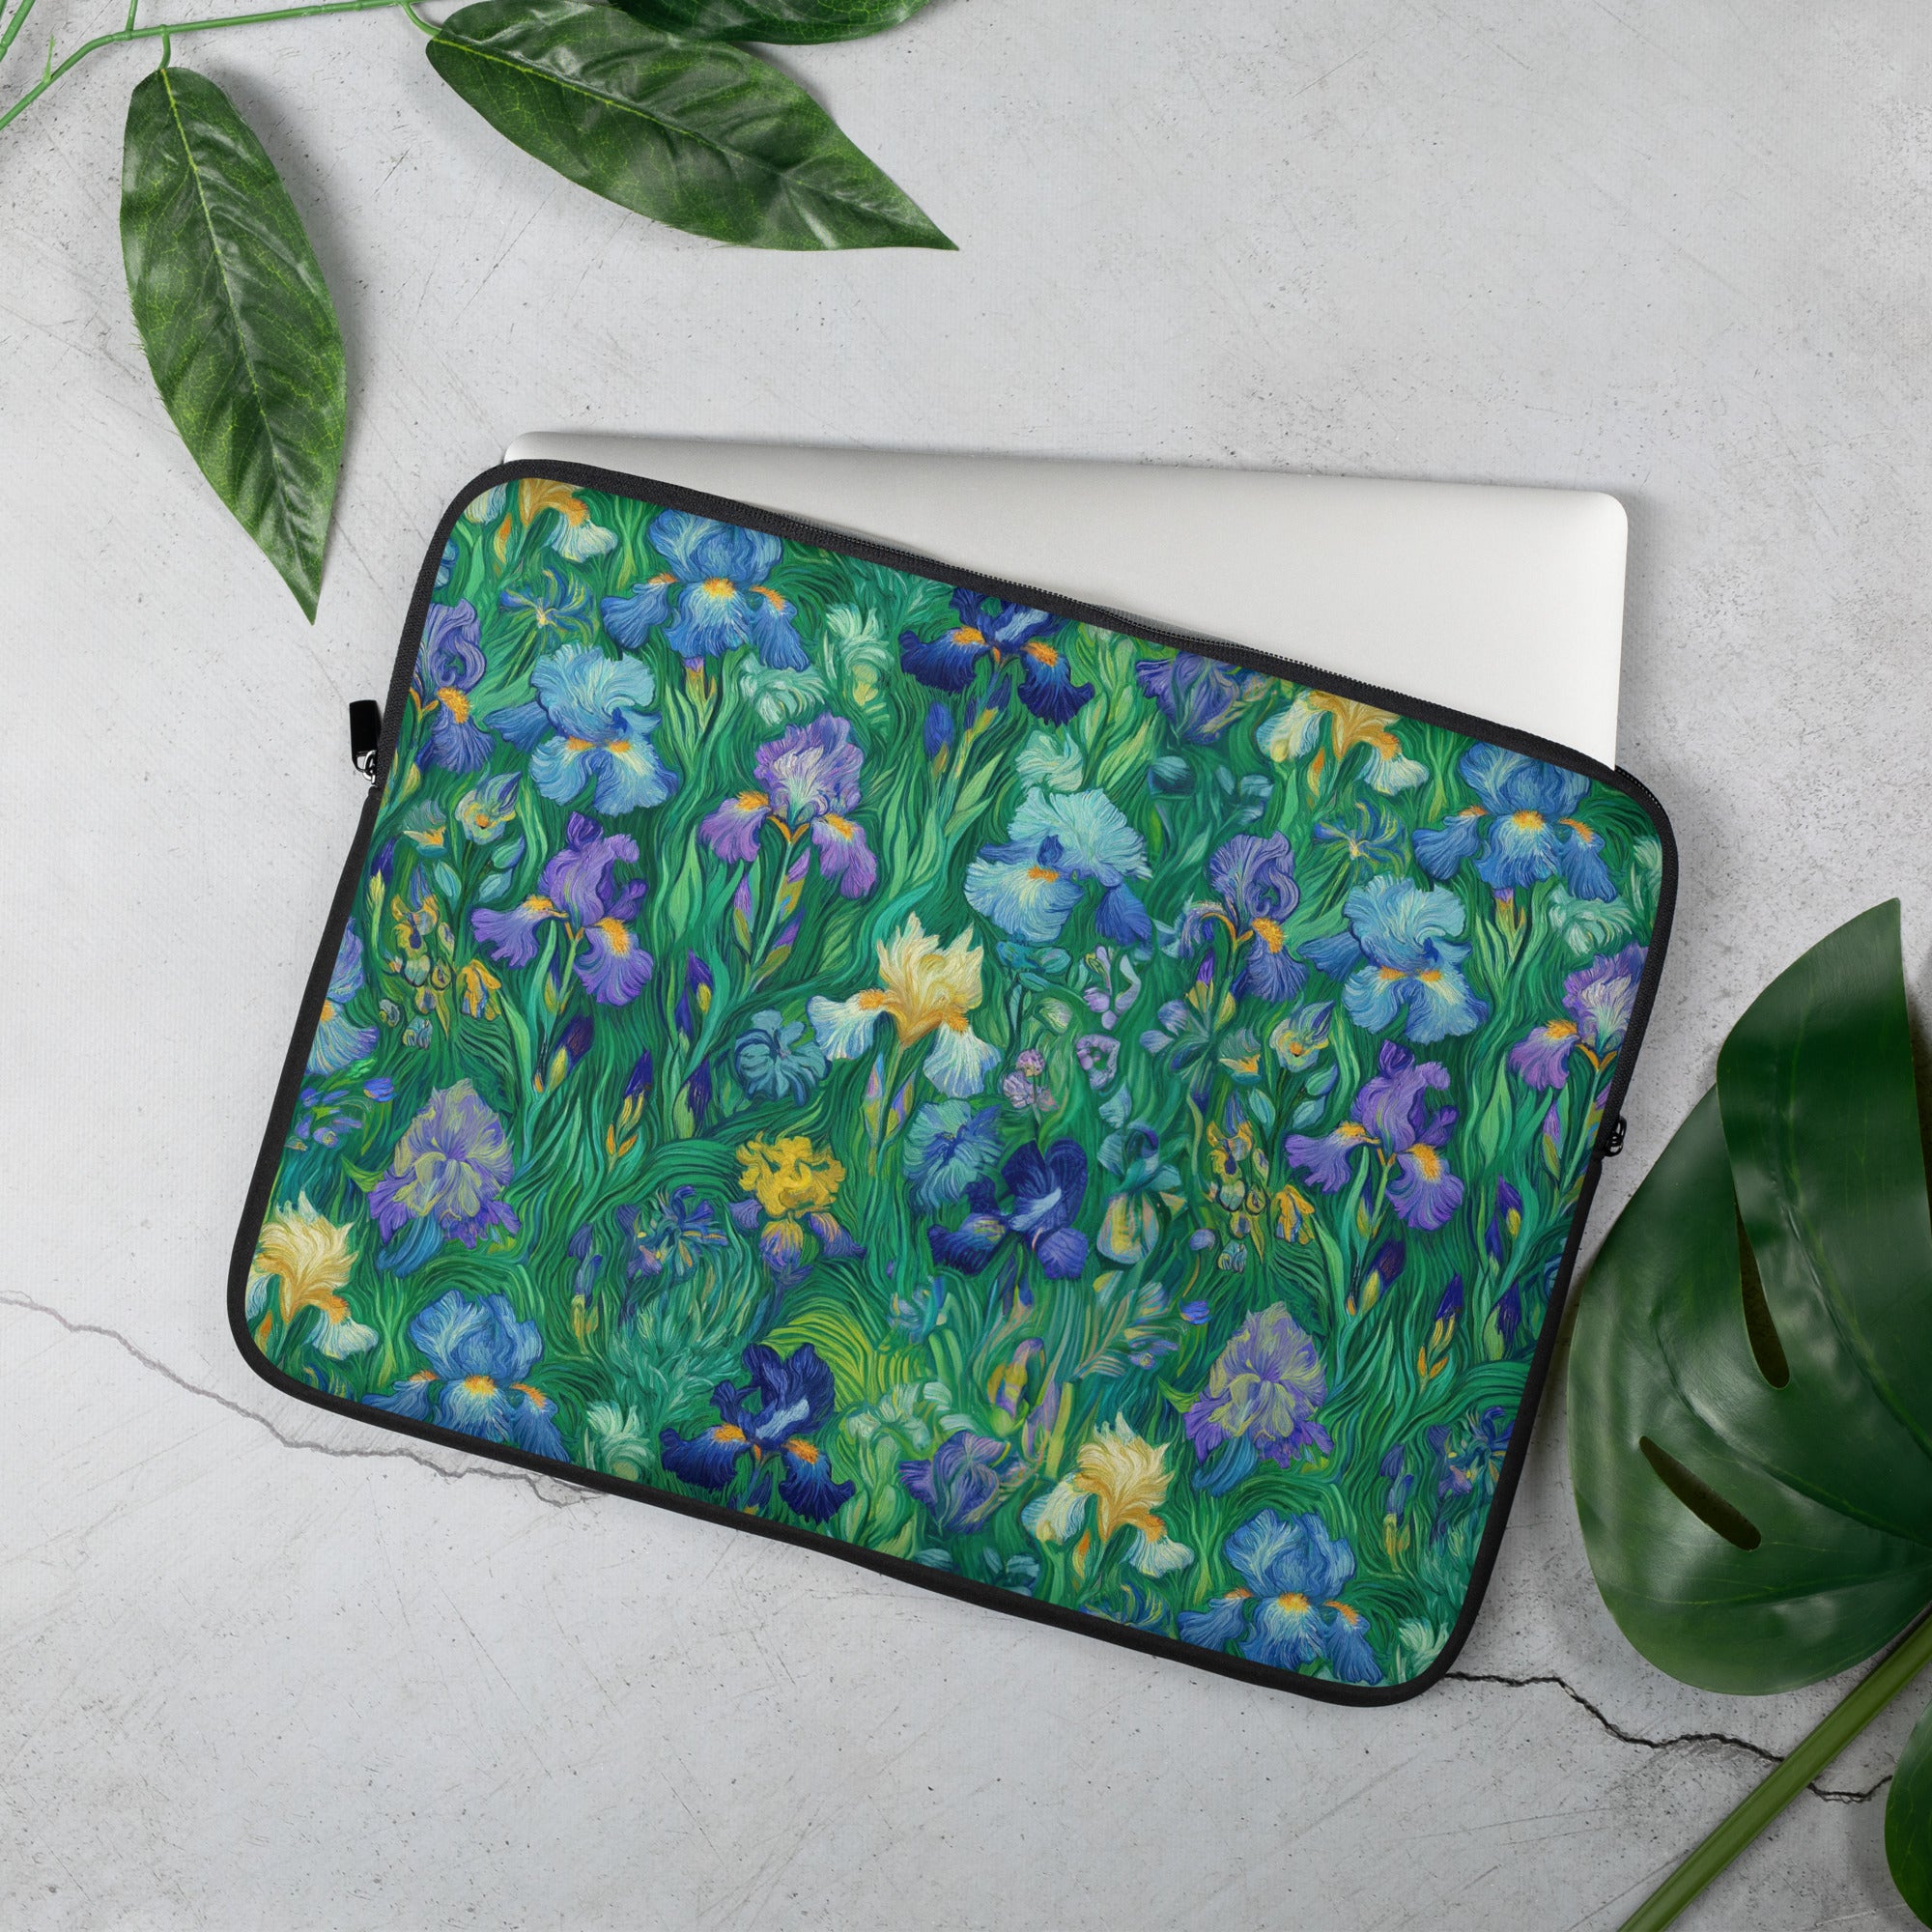 Vincent van Gogh 'Irises' Famous Painting Laptop Sleeve | Premium Art Laptop Sleeve 13"/15"